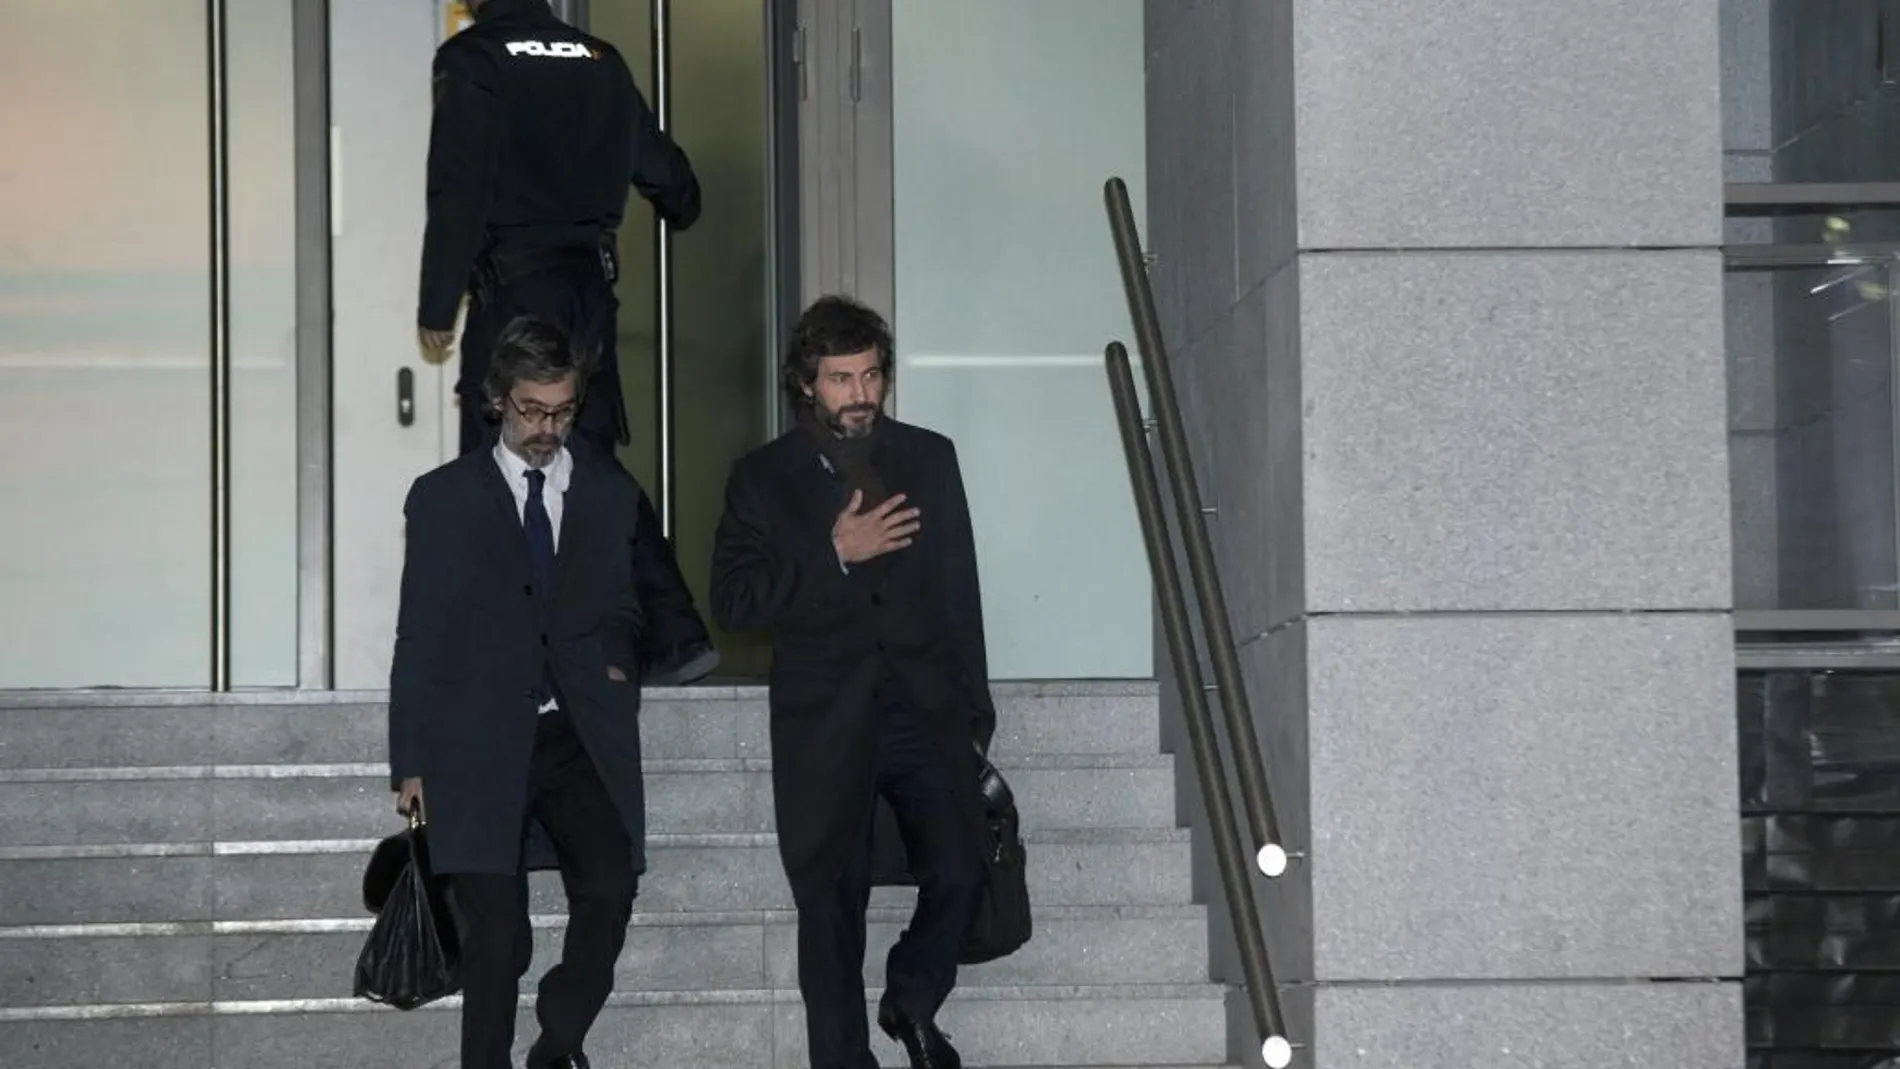 Oleguer Pujol (derecha), hijo menor del expresidente catalán, a su salida de la Audiencia Nacional el pasado día 12 donde fue interrogado por el juez de la Audiencia Nacional José de la Mata, en el marco de la investigación que se sigue contra él por blanqueo de capitales.